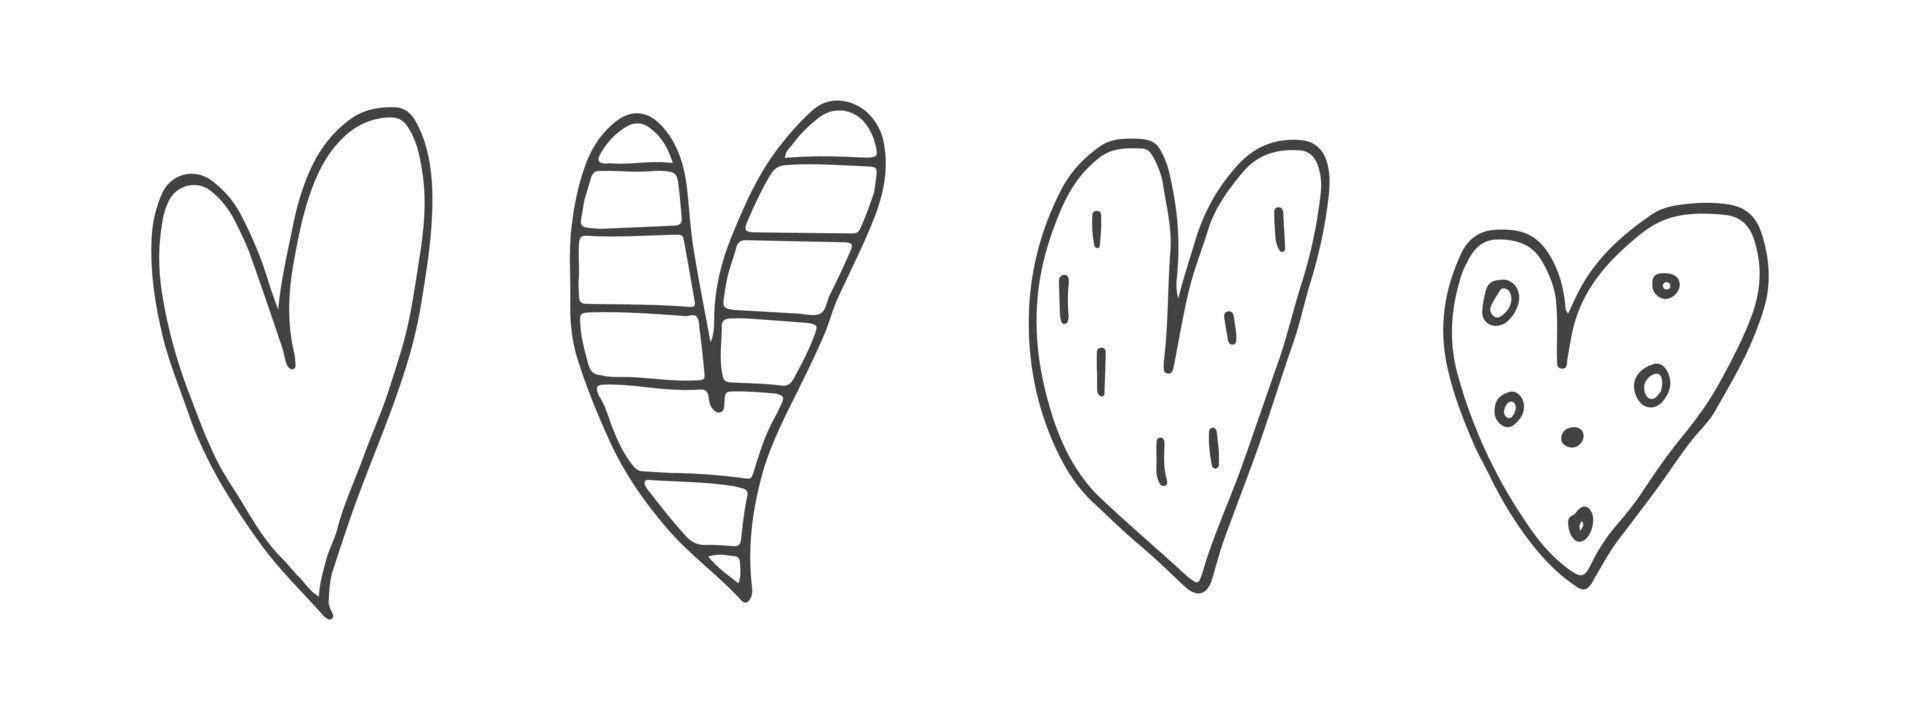 grand ensemble d'éléments de doodle mignons dessinés à la main sur l'amour. autocollants de message pour les applications. icônes pour la saint valentin, les événements romantiques et le mariage. coeurs avec rayures et texture. vecteur